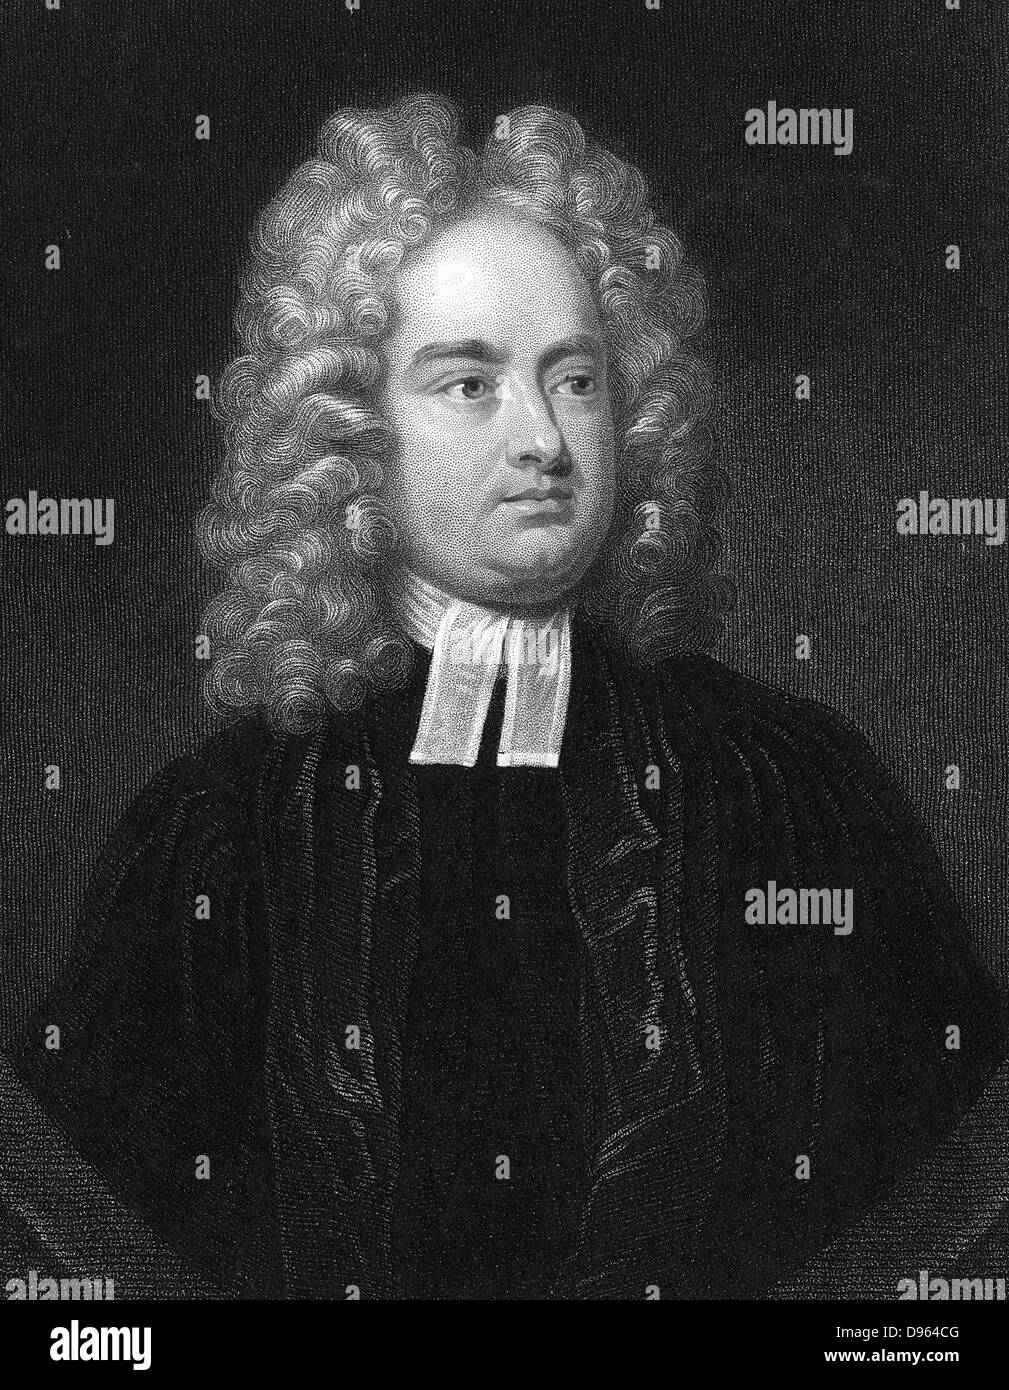 Jonathan Swift (1667-1746), membre du clergé anglo-irlandais et poète satirique. Auteur de "Voyages de Gulliver" 1726 "Bataille des livres" et "l'histoire de la baignoire' 1704. Gravure Banque D'Images